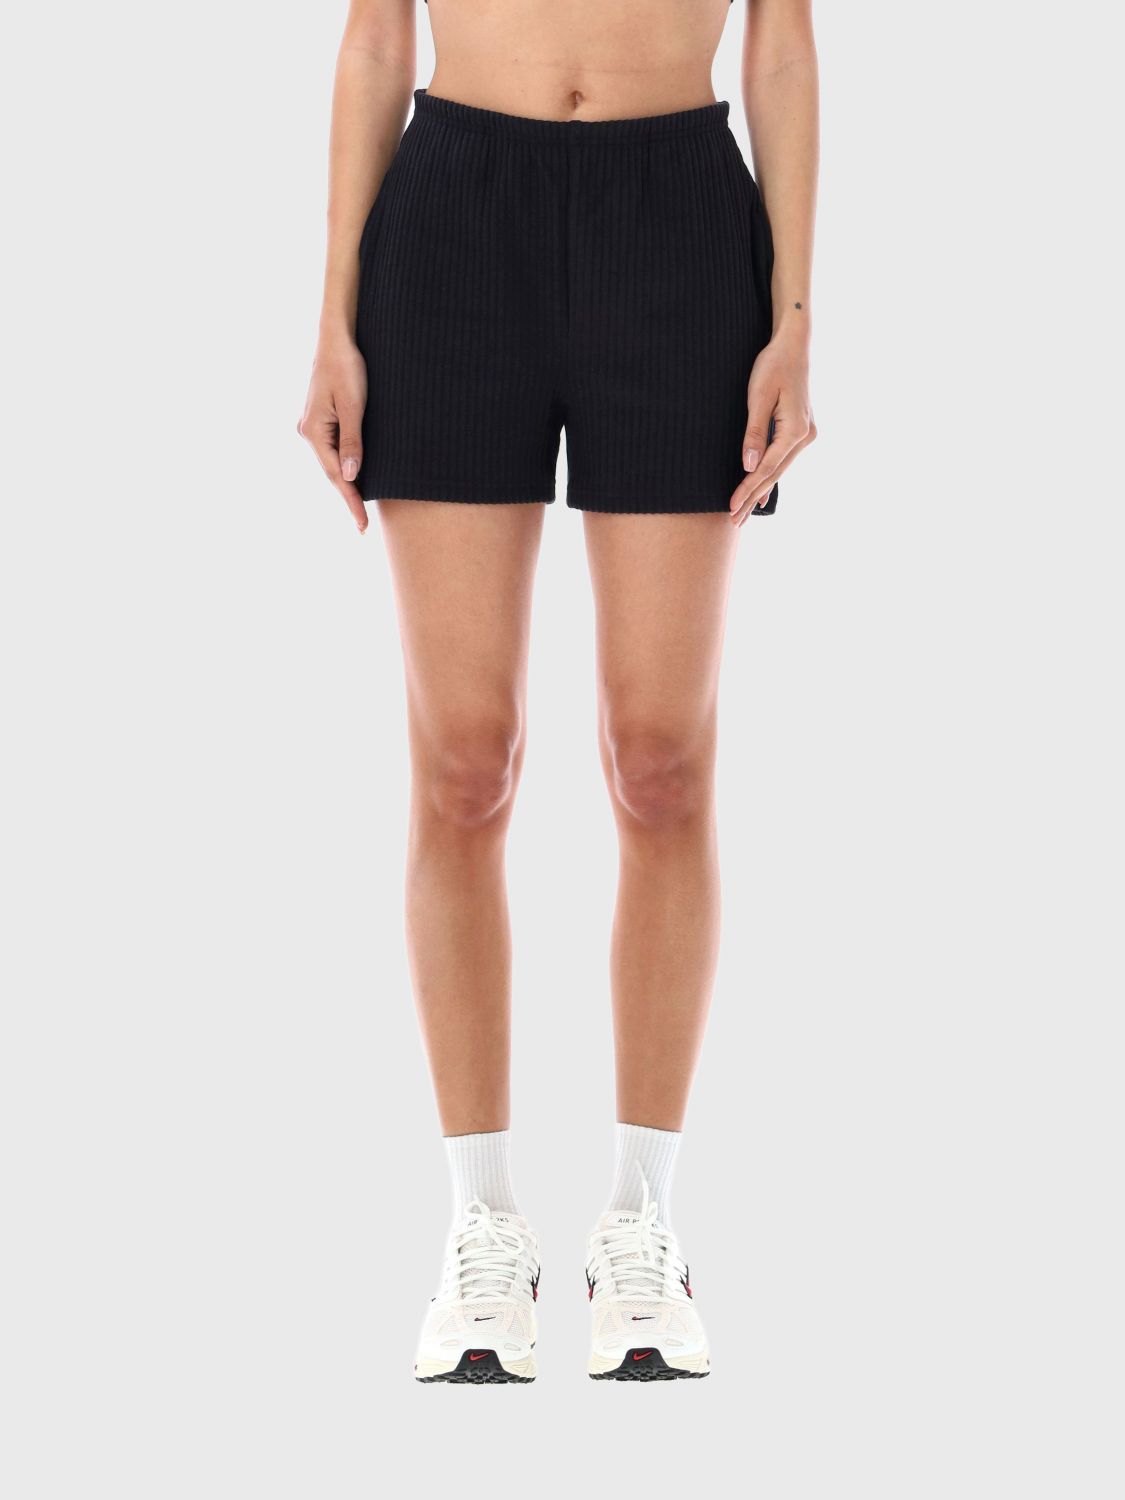 Nike Short NIKE Woman color Black